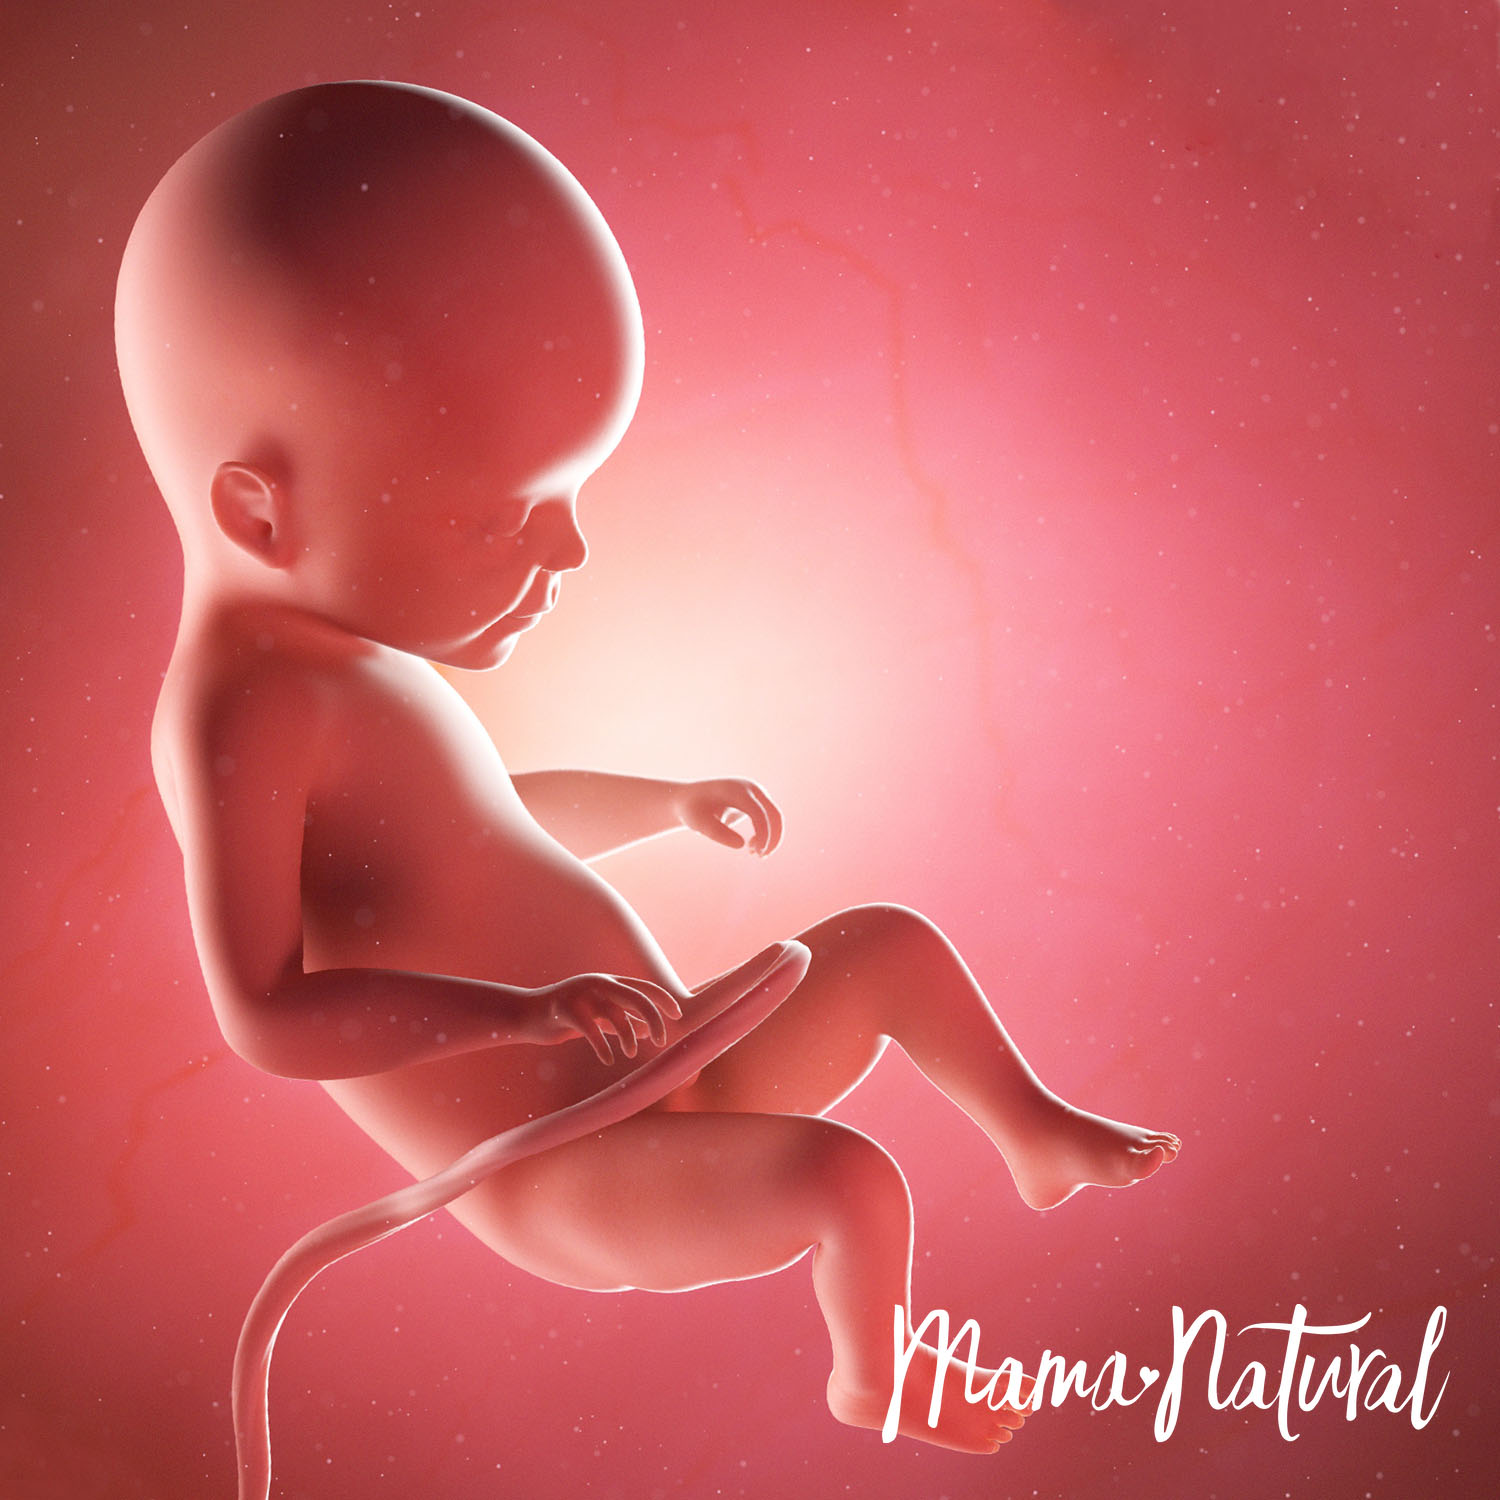 Baby at 22 Weeks Pregnant - Pregnancy Week By Week by Mama Natural